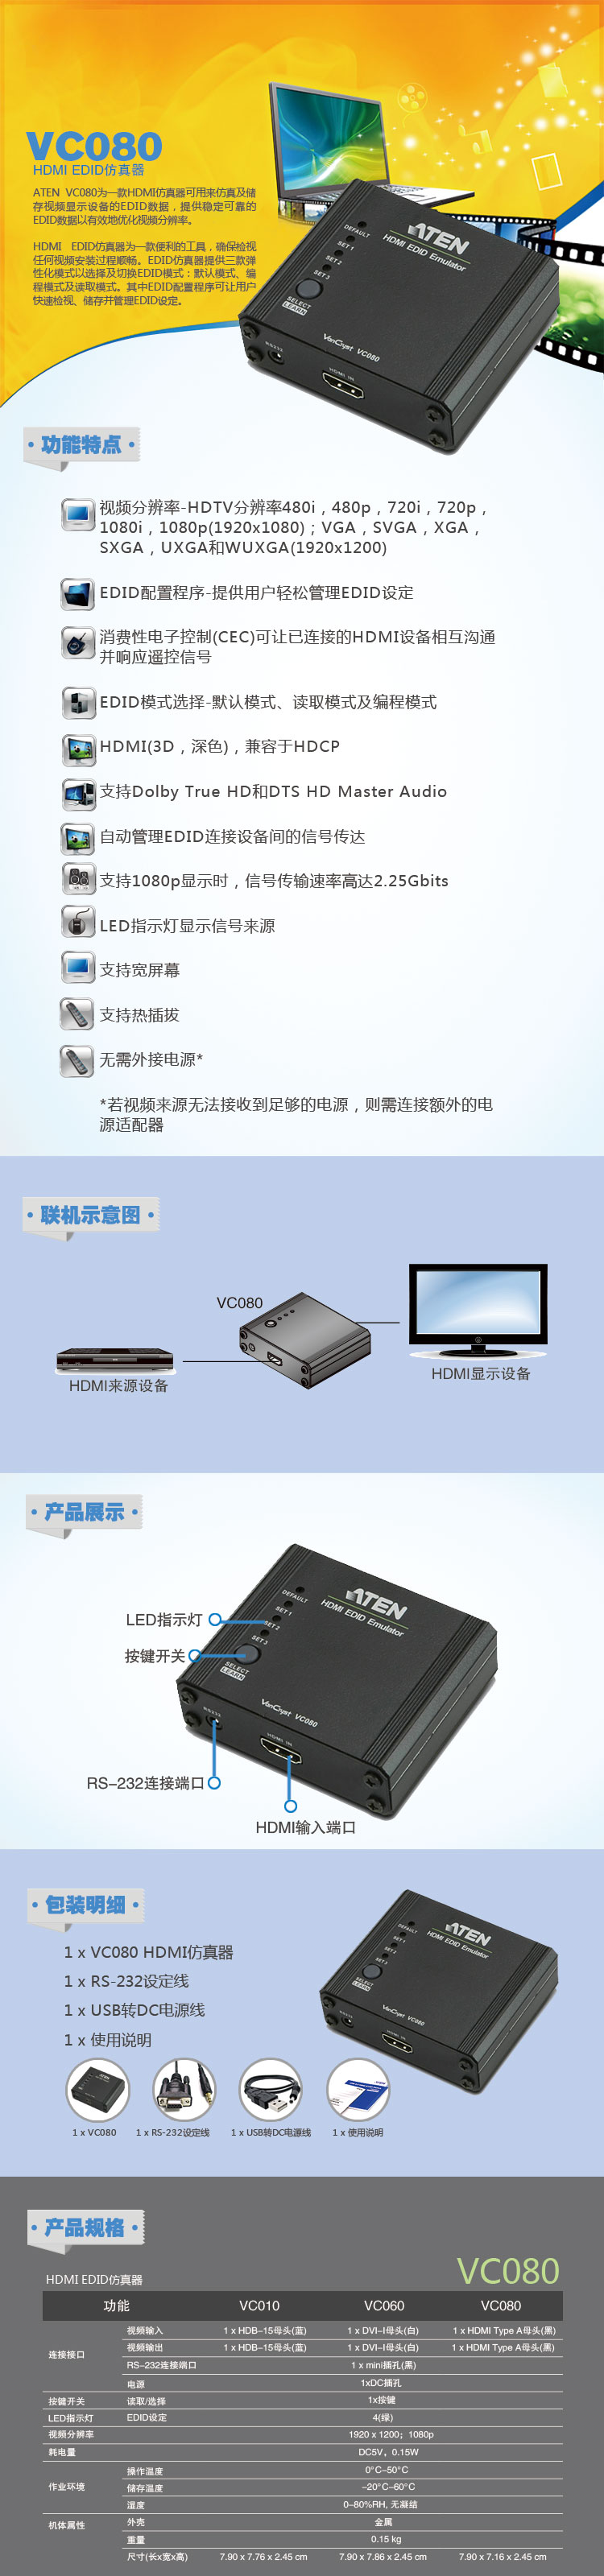 宏正(ATEN)网络存储VC080 ATEN宏正VC080 HDMI EDID仿真器EDID模式选择 